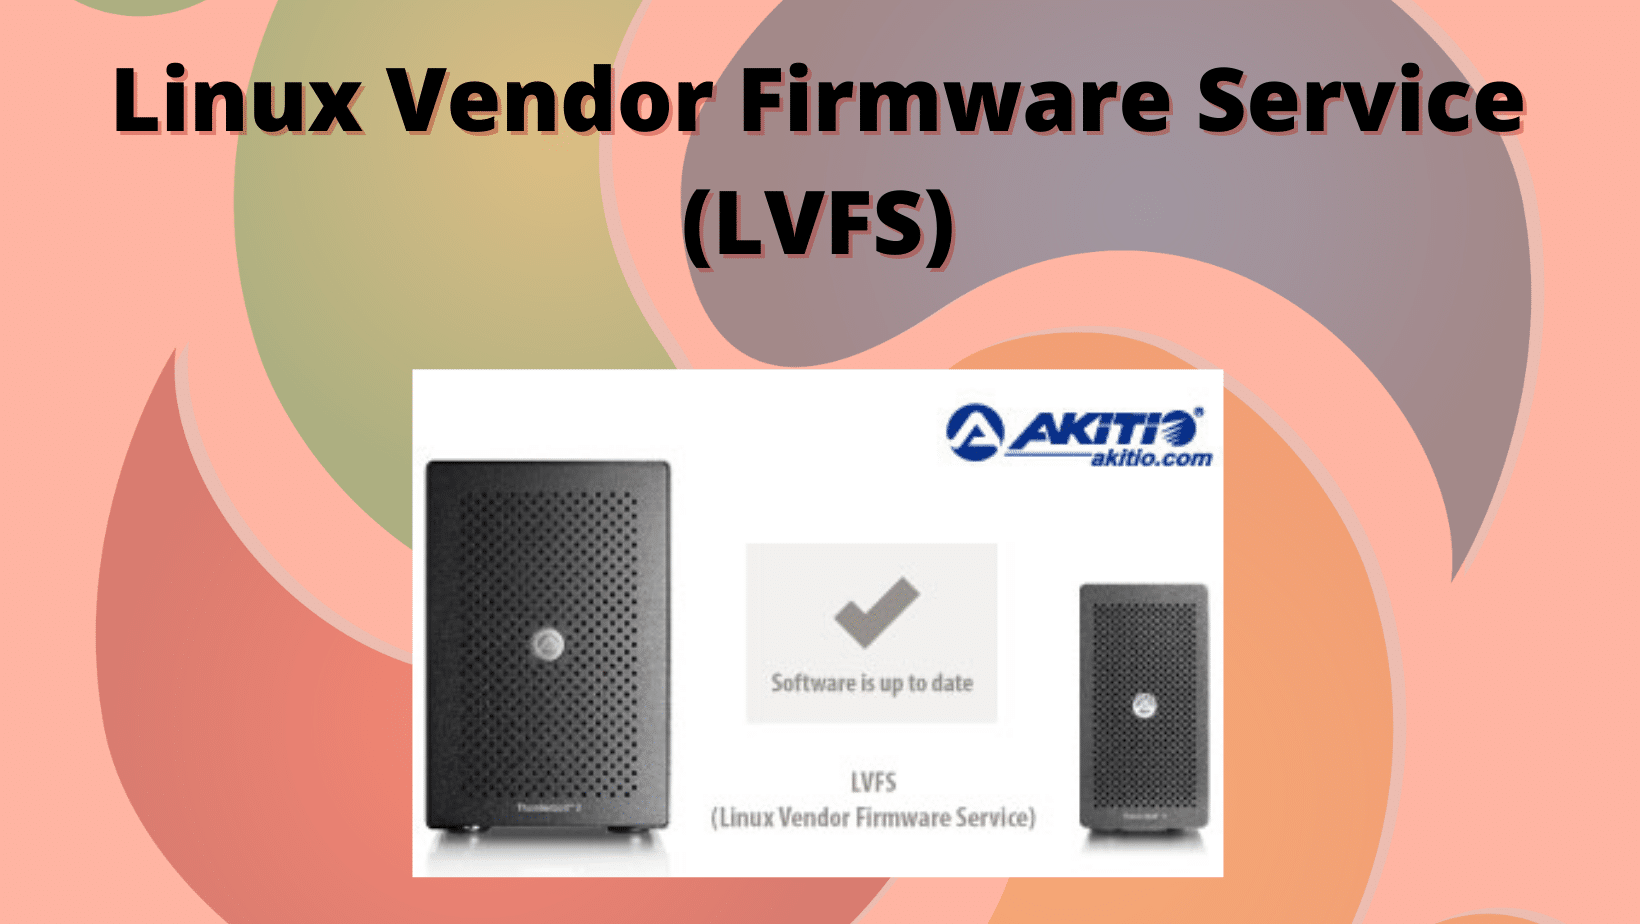 LVFS explora firmware alternativo e de código aberto para dispositivos em fim de vida útil